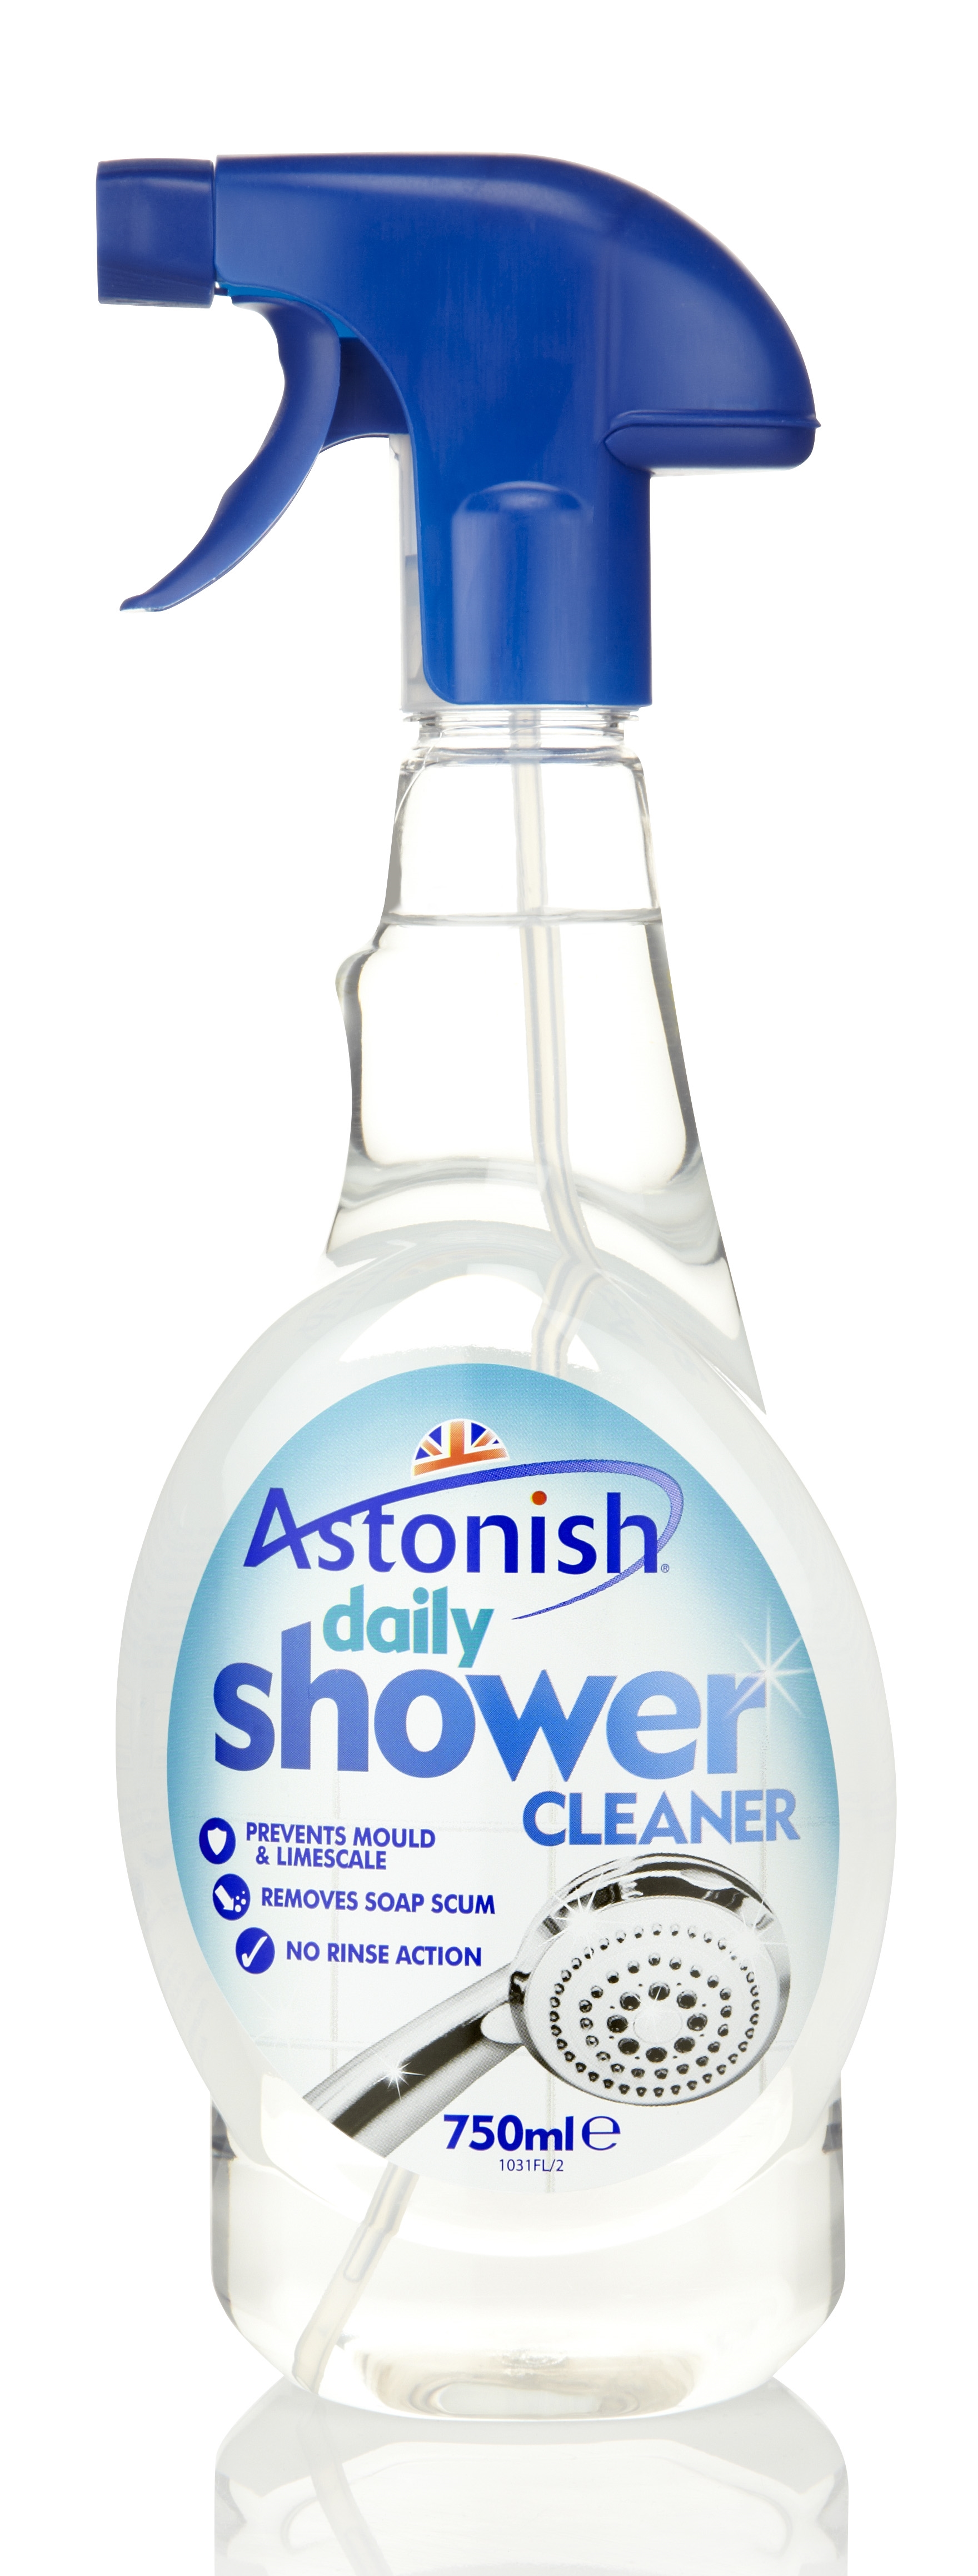 Astonish Daily Shower Cleaner 750ml trigger.jpg